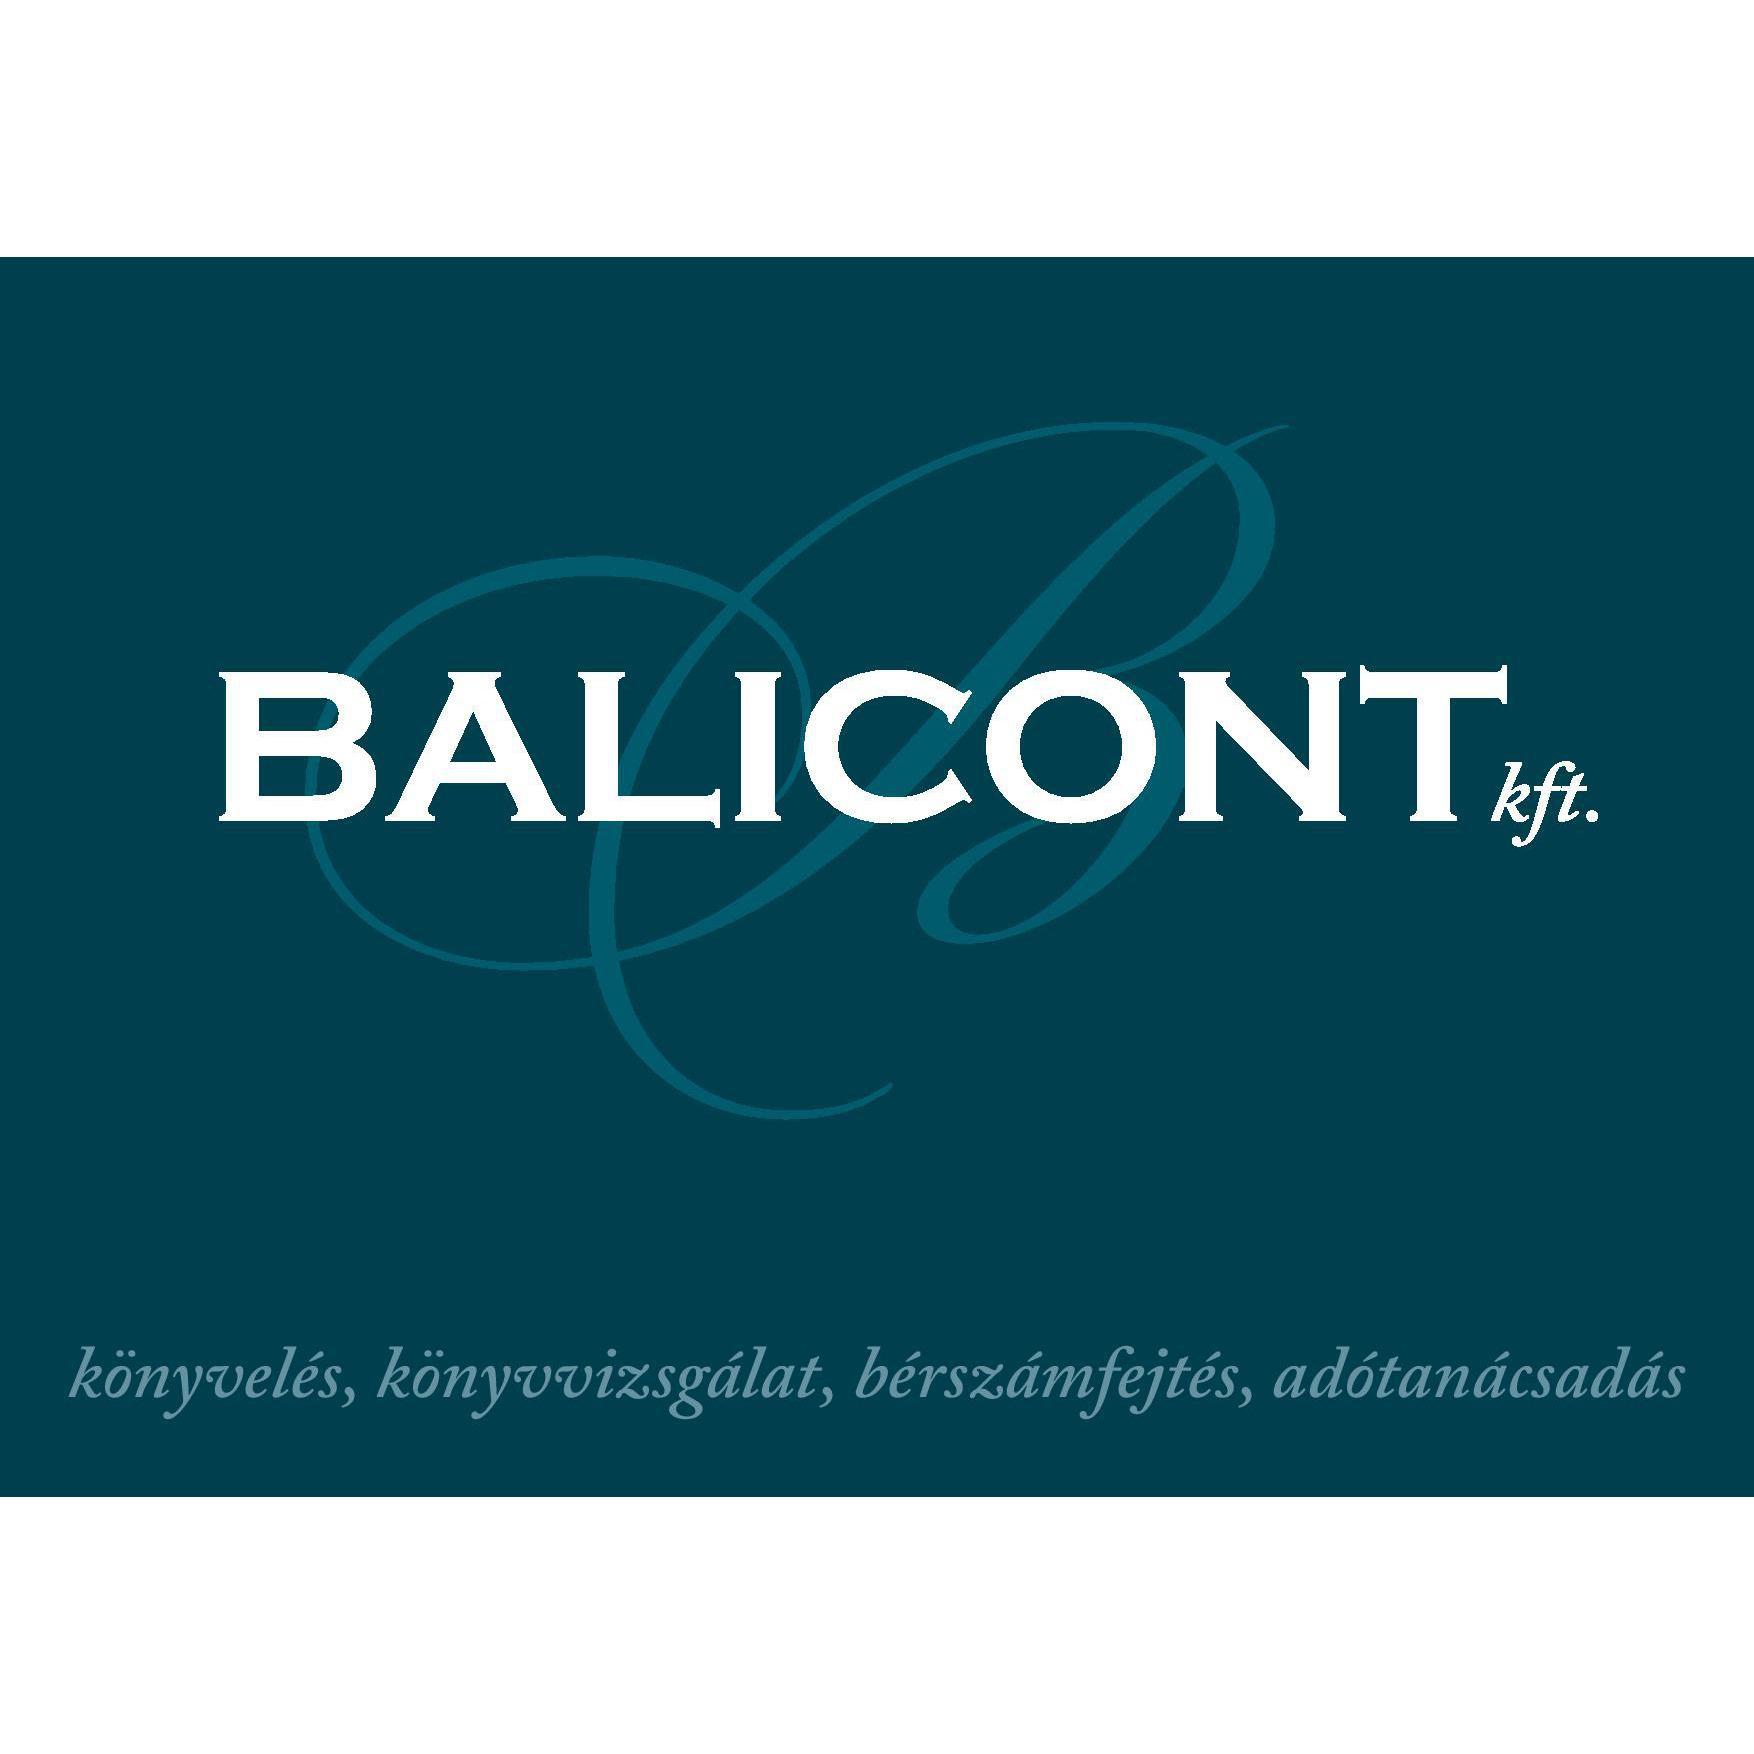 BALICONT Kft - Könyvelés - Adótanácsadás - Bérszámfejtés Logo